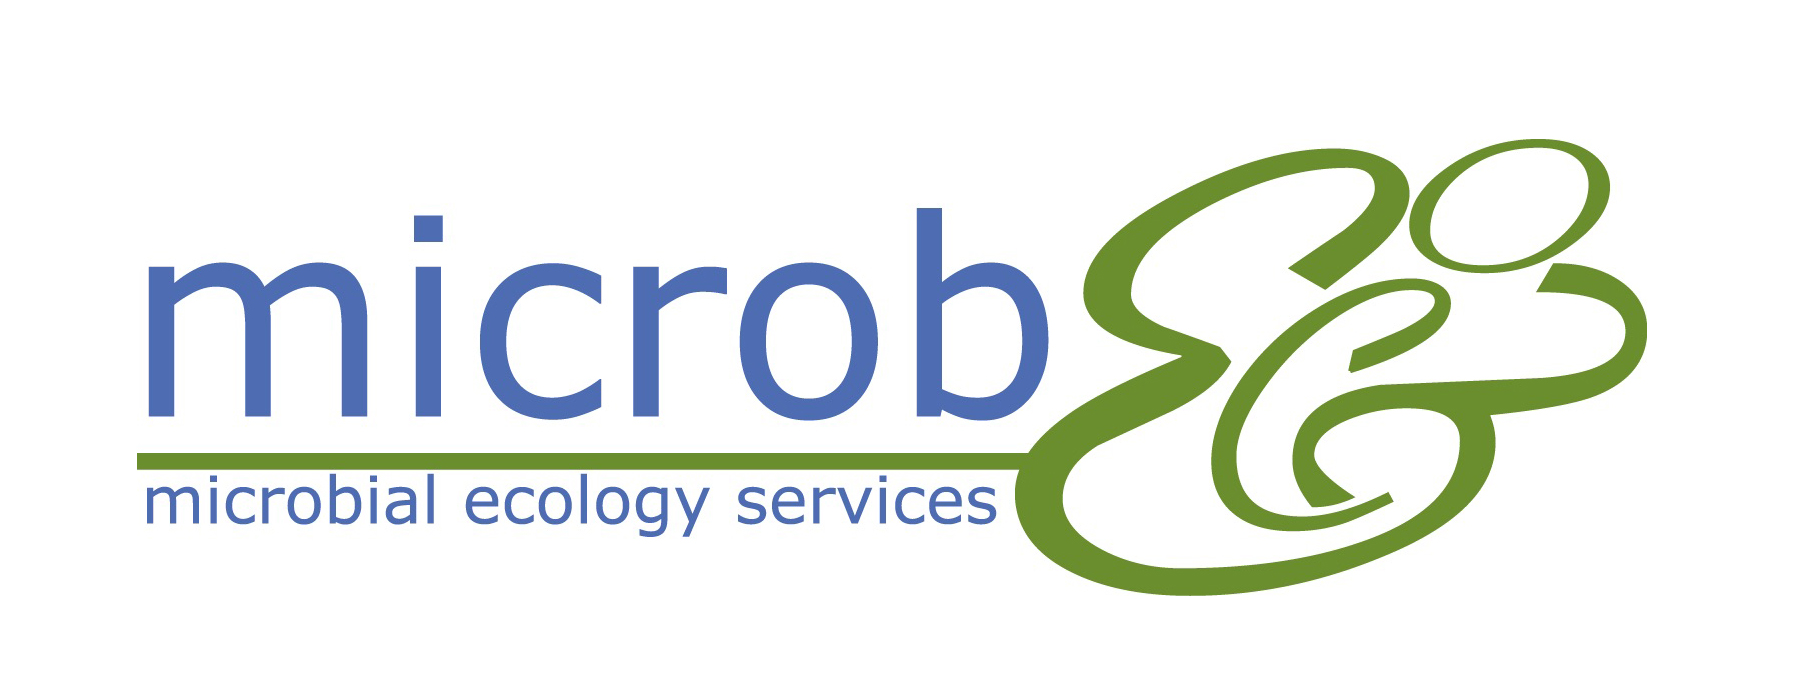 2018-01/logo-sponsor-microbeco_ed.jpg